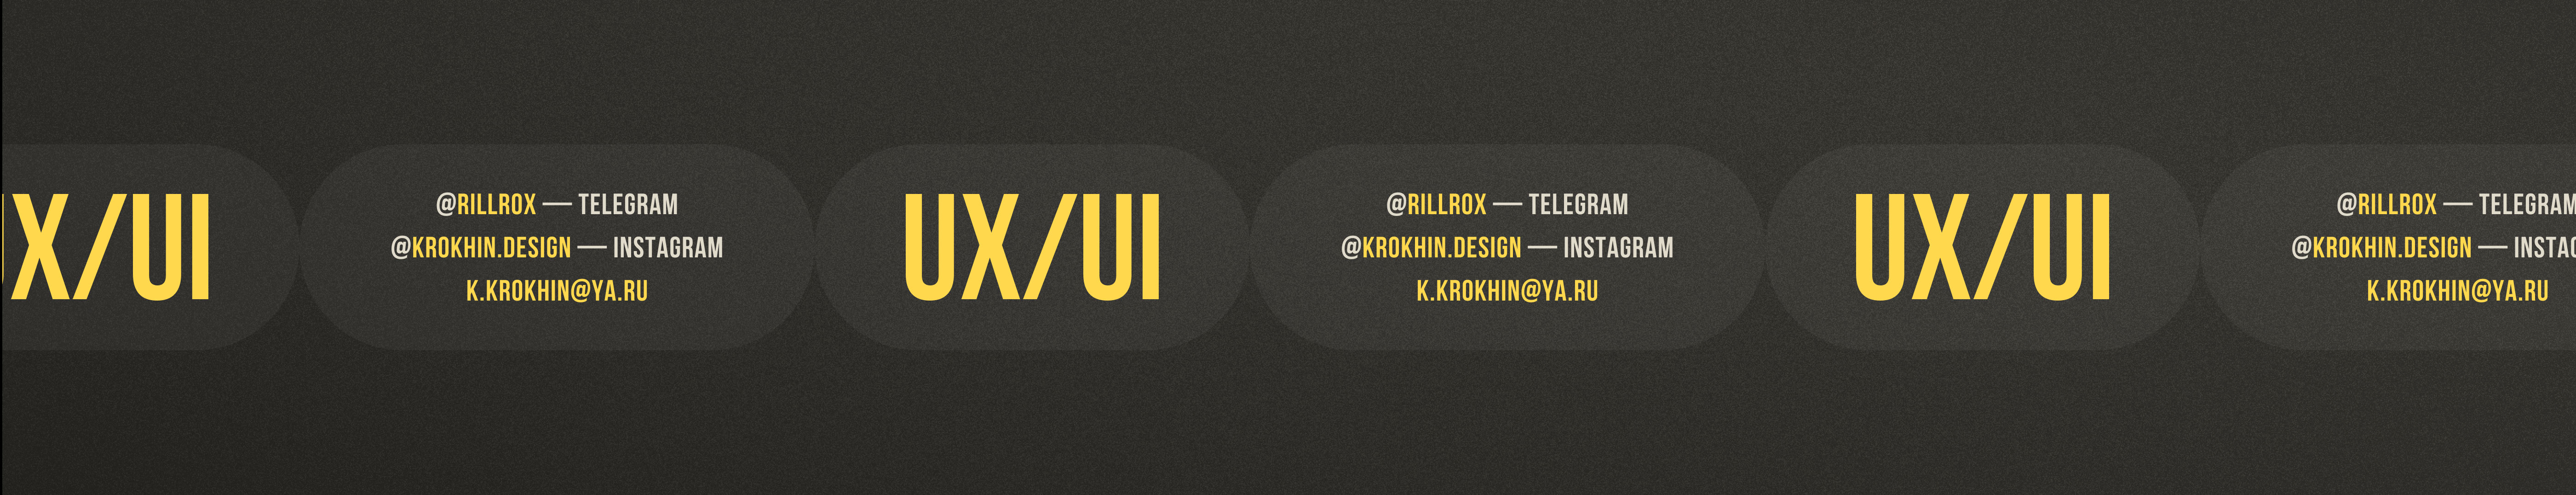 Krokhin Design's profile banner